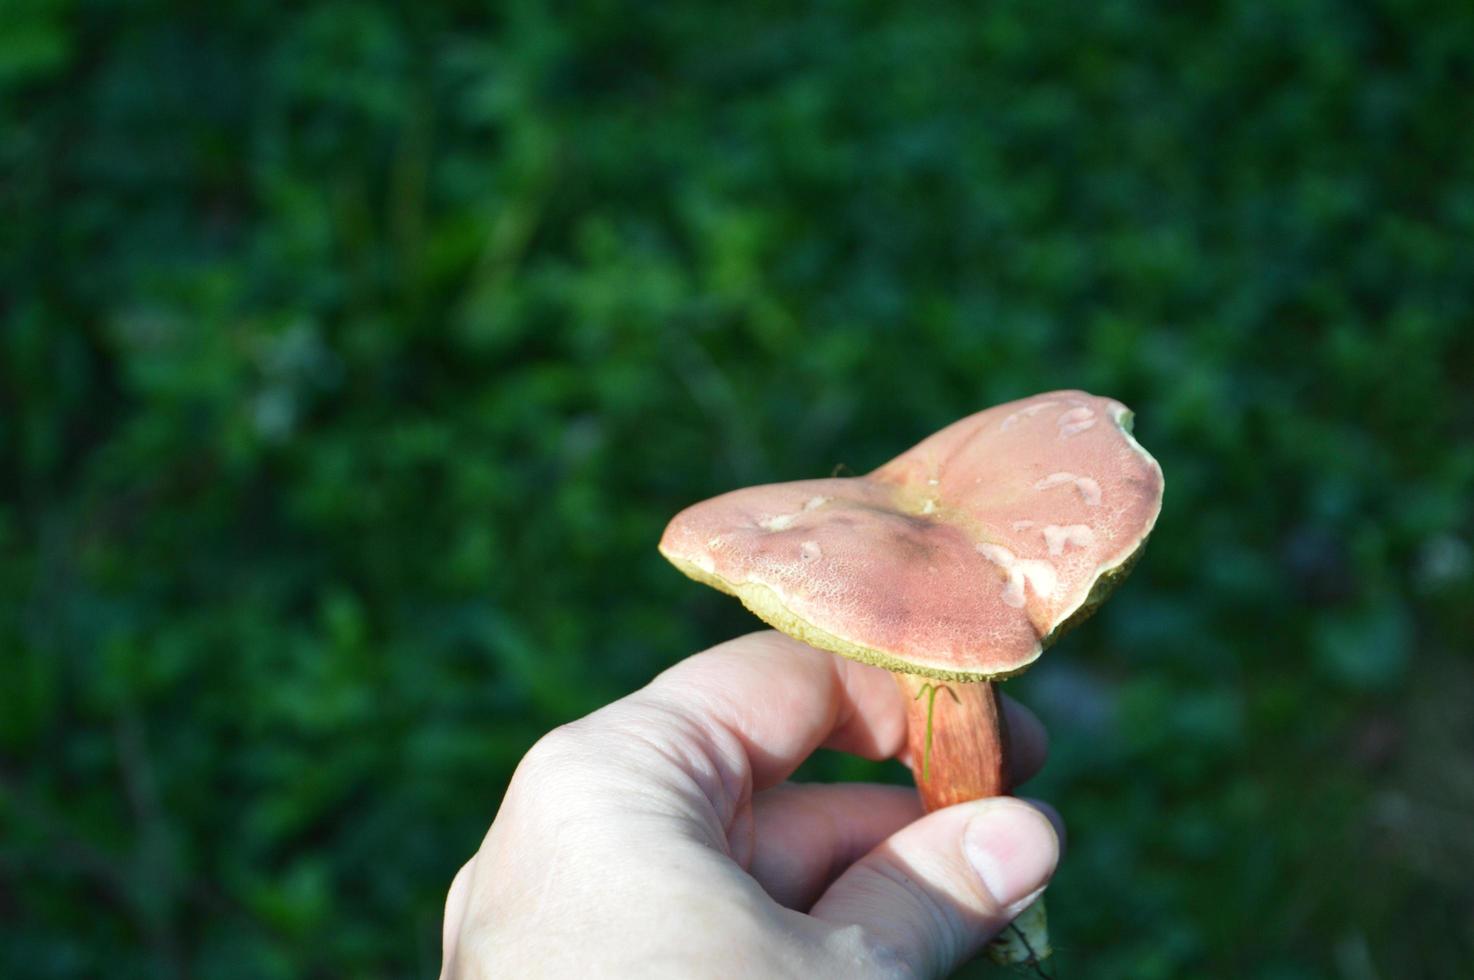 cogumelo comestível em mãos humanas foto